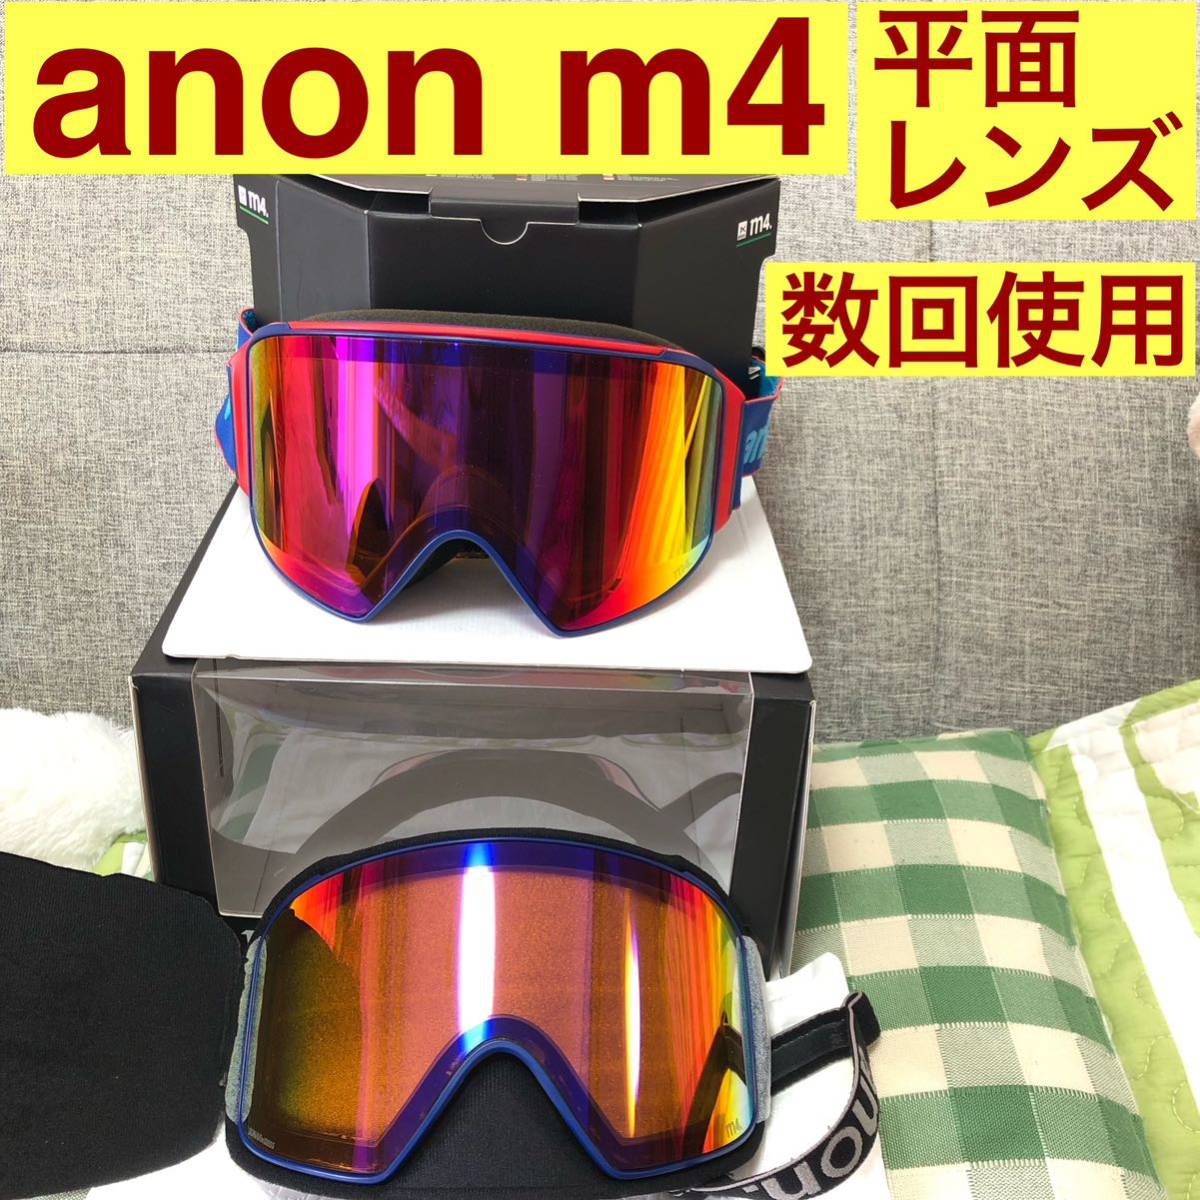 ネットオンラインストア anon M4 アノン スノーボード スキー ゴーグル